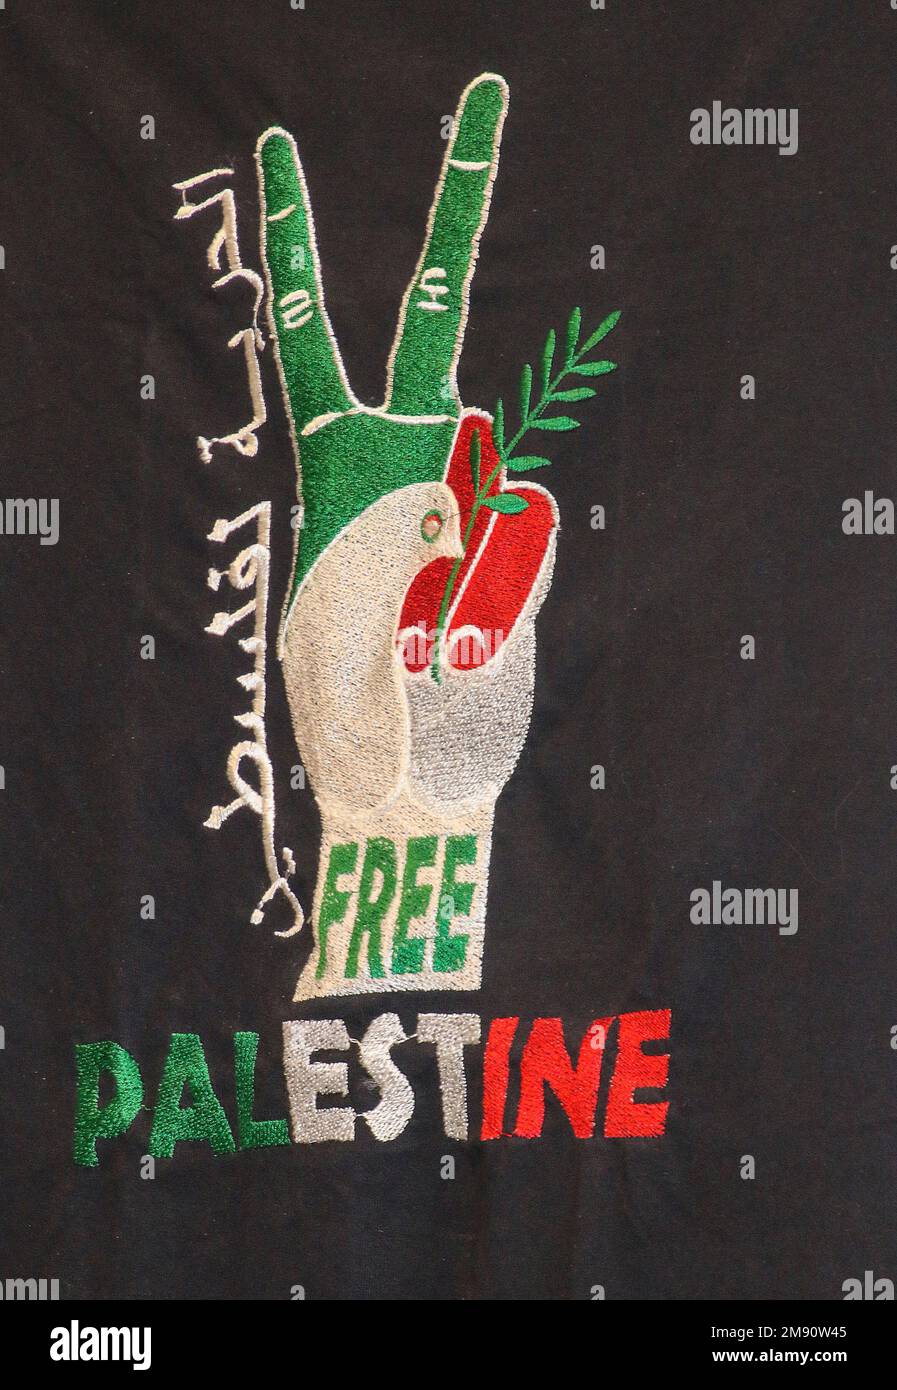 Affiche support Palestine Global Village Dubai, Émirats Arabes Unis Banque D'Images